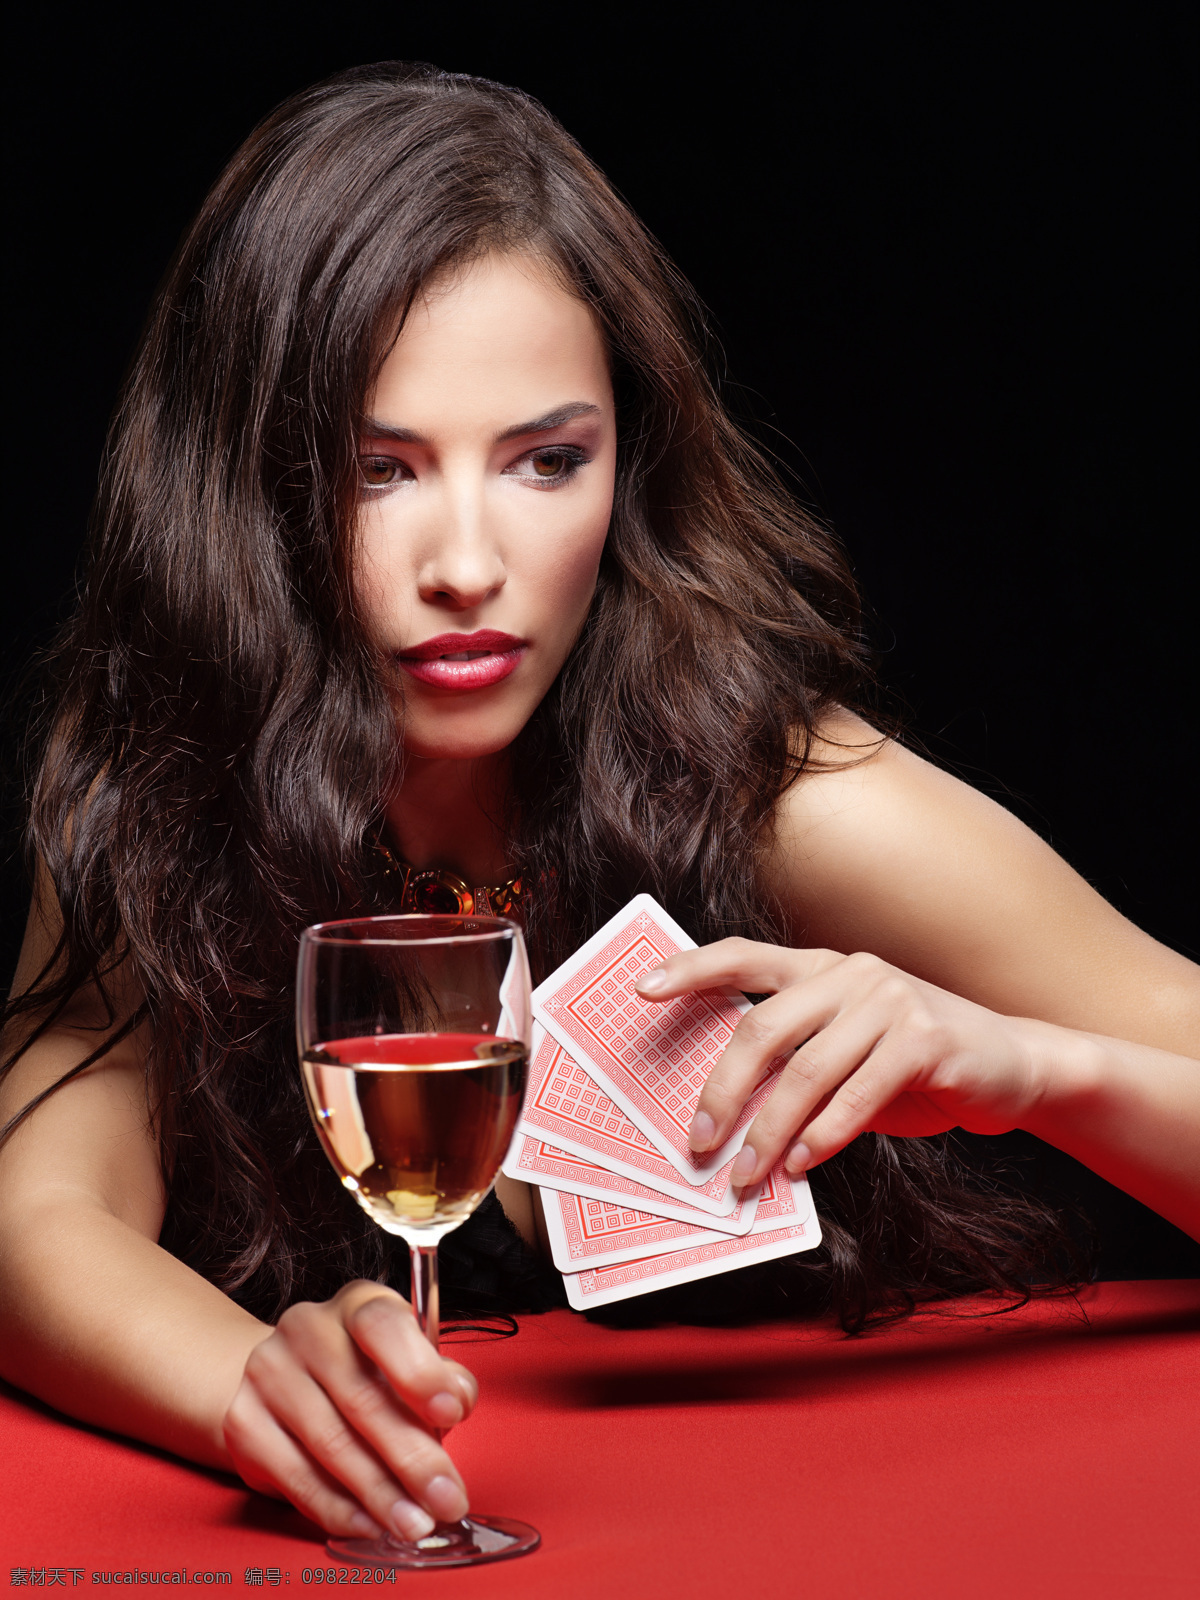 赌场 女人 人物 女性 赌博 美女 诱人 气质 高贵 扑克牌 香槟酒 美女图片 人物图片